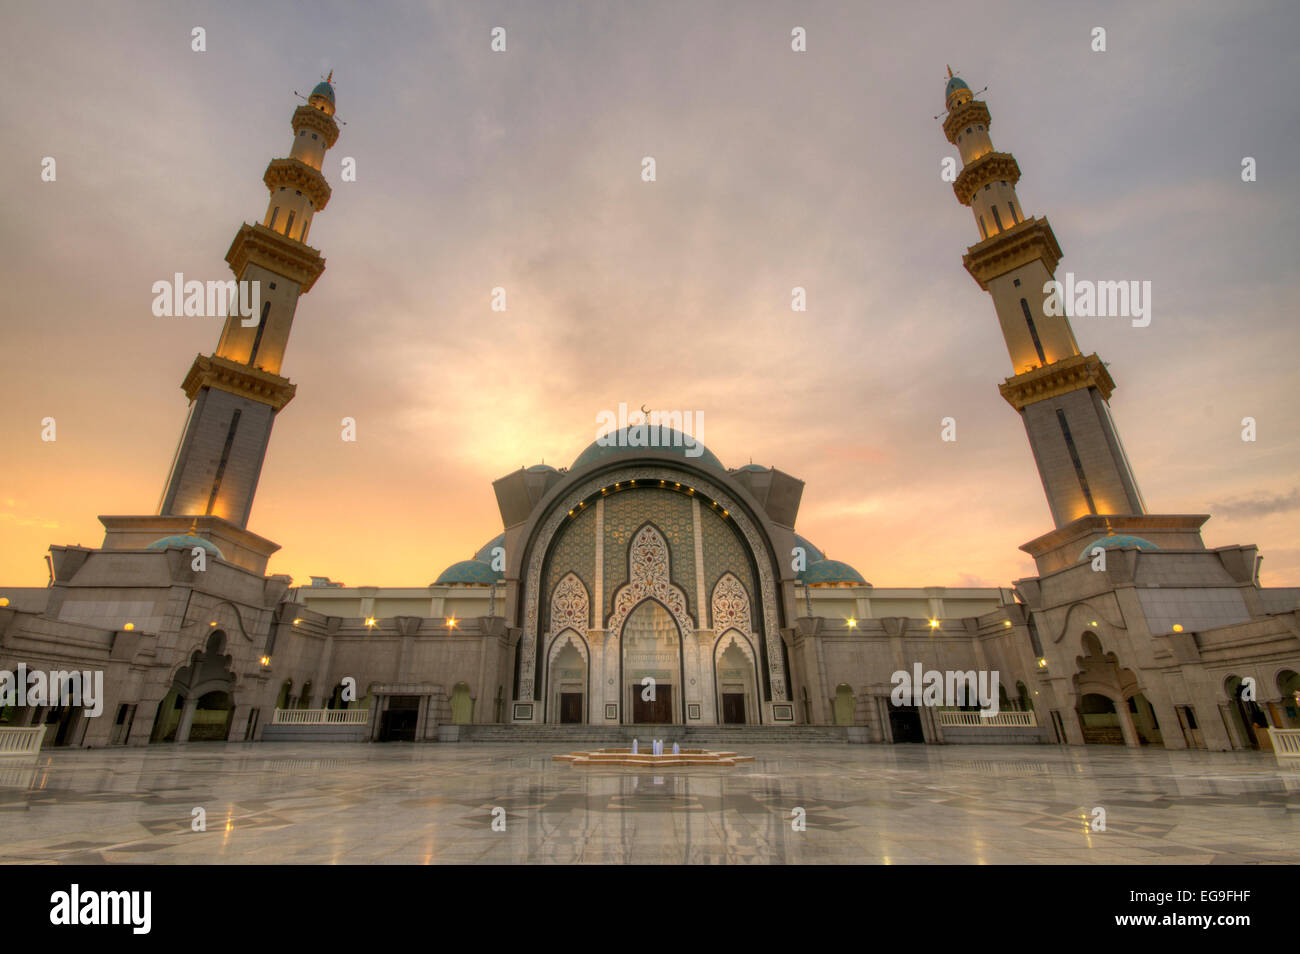 Malaysia, Kuala Lumpur, View of Federal Territory Mosque or Masjid Wilayah Persekutuan Stock Photo